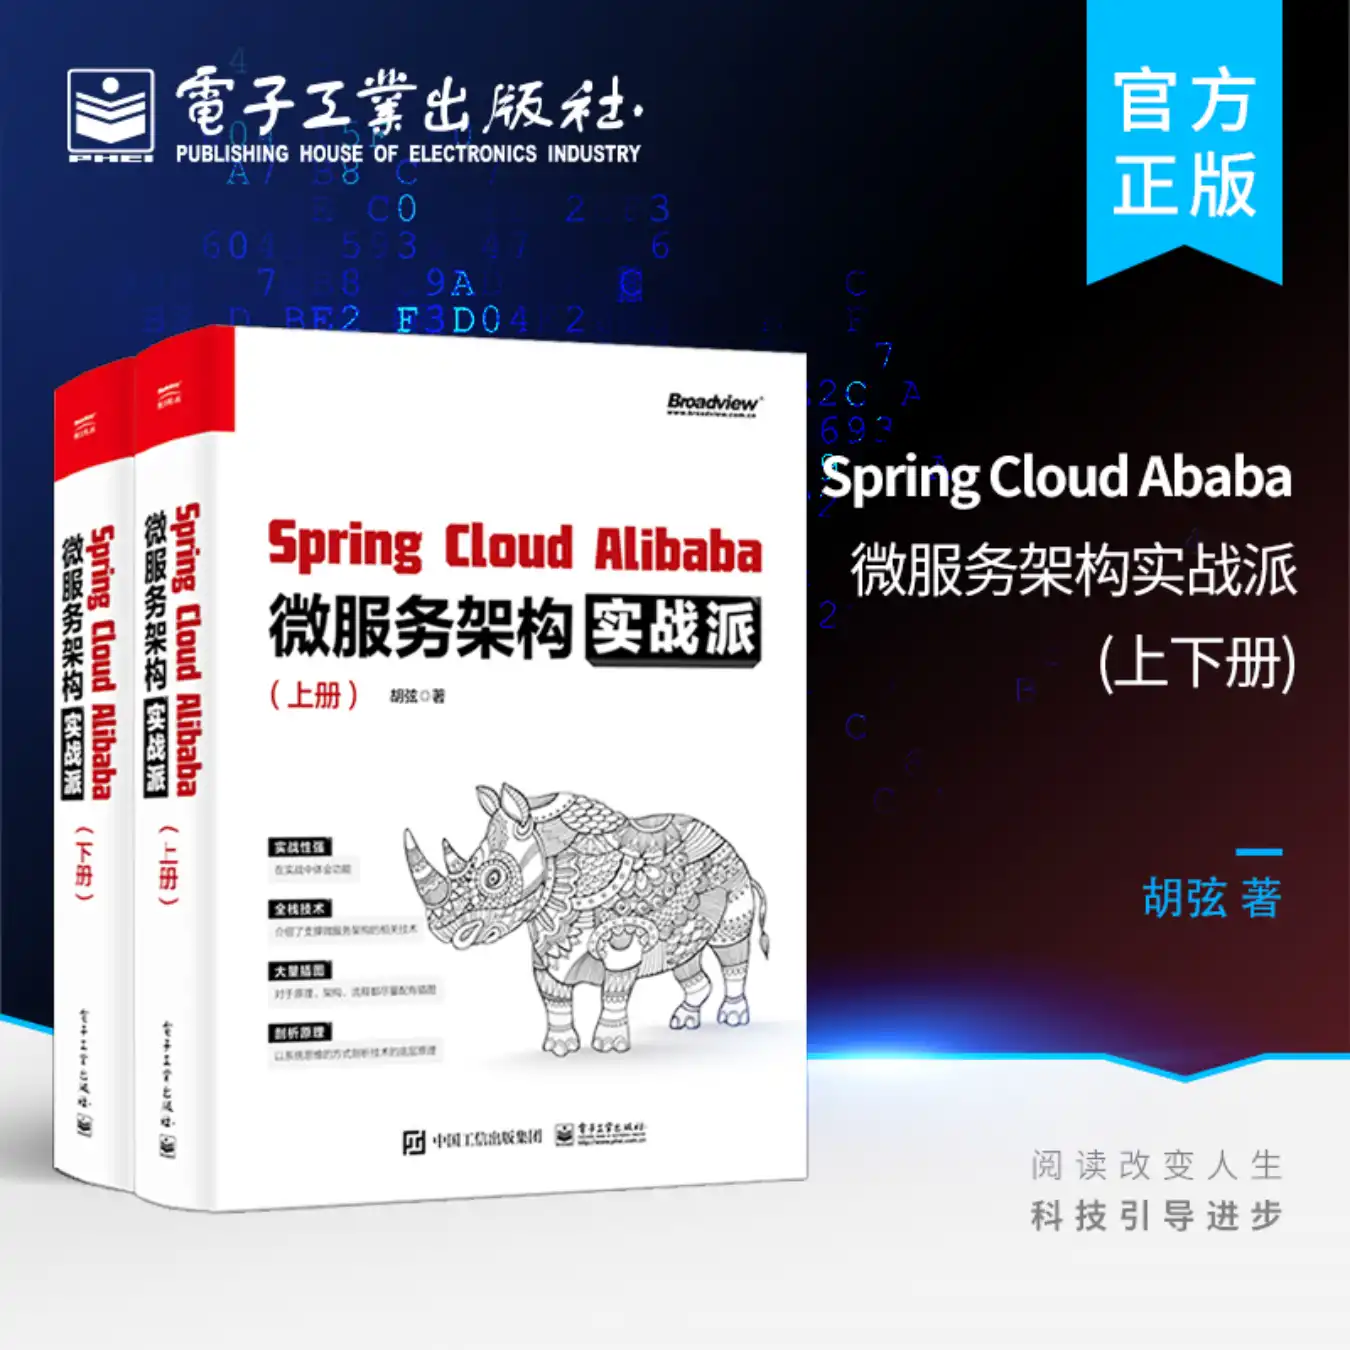 不用找了，这本书帮你完全搞定Spring Cloud Alibaba